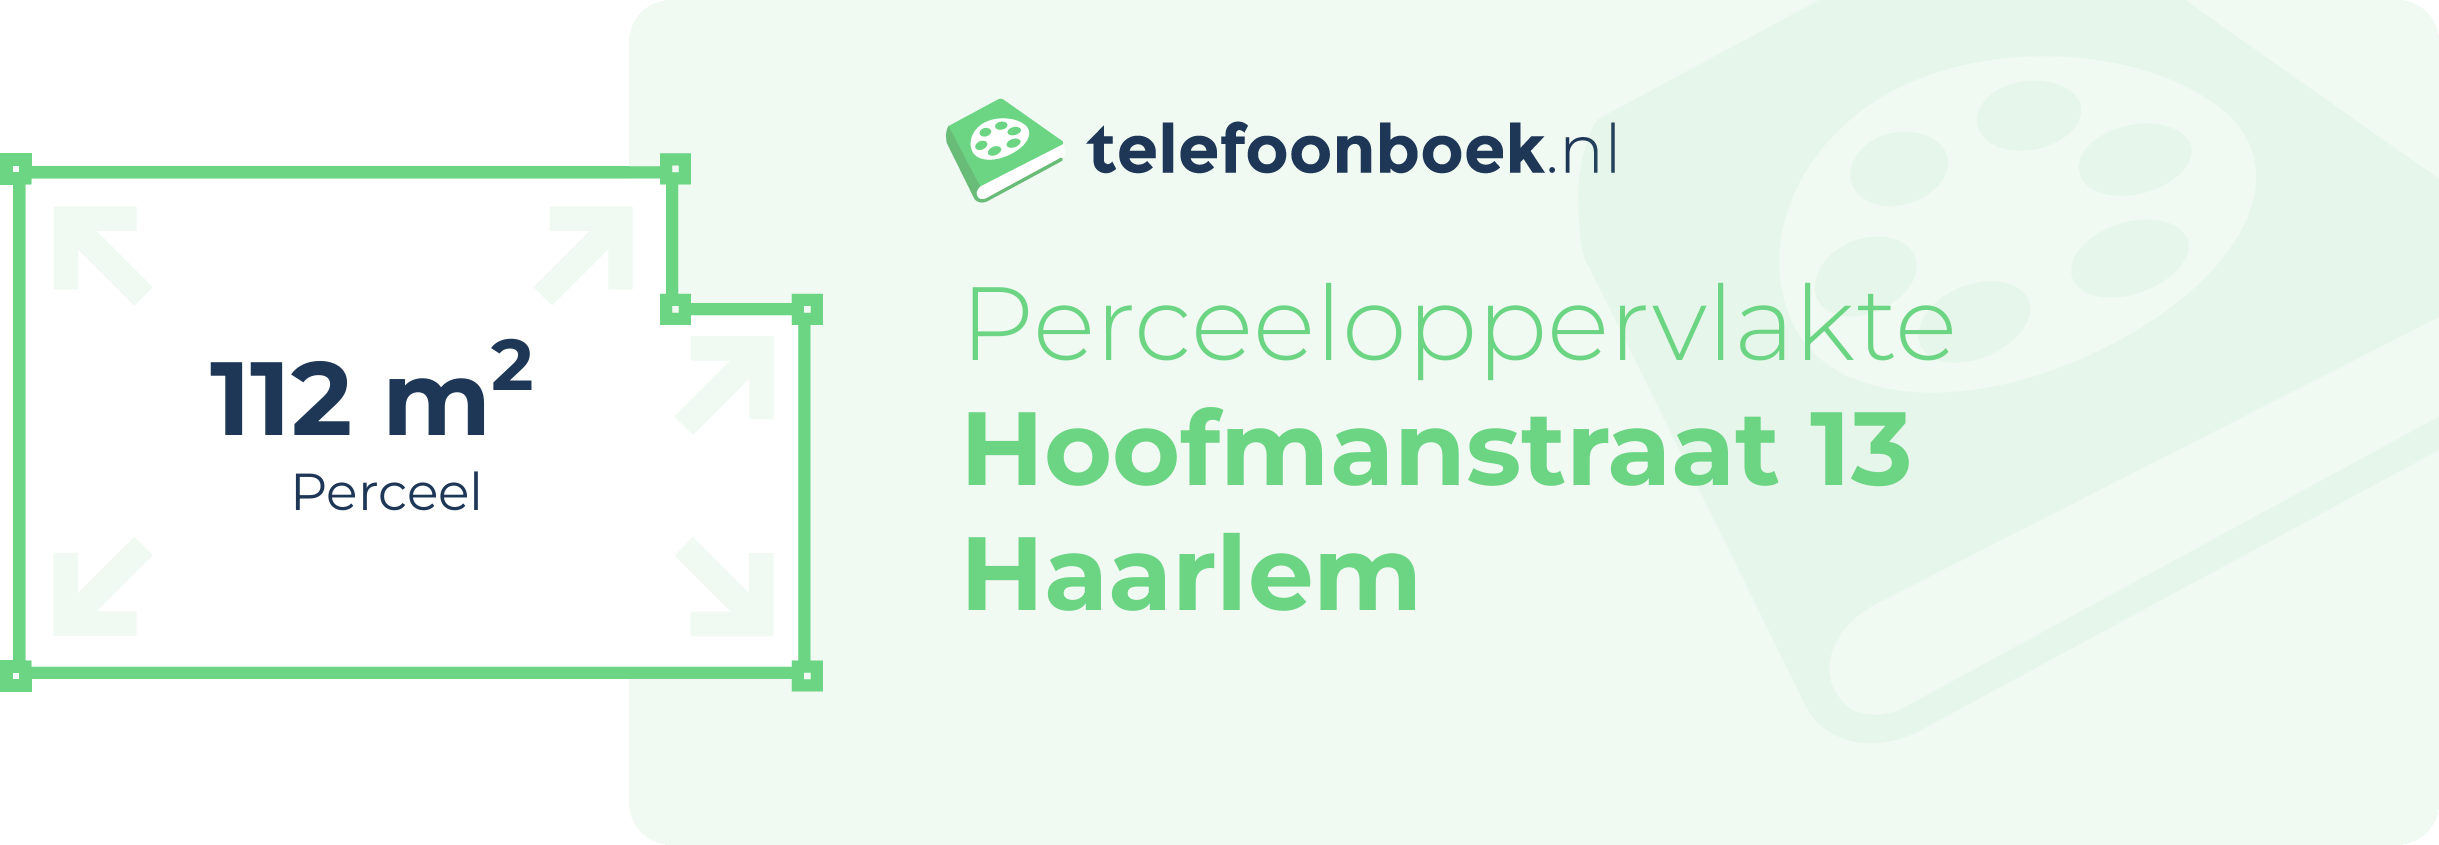 Perceeloppervlakte Hoofmanstraat 13 Haarlem